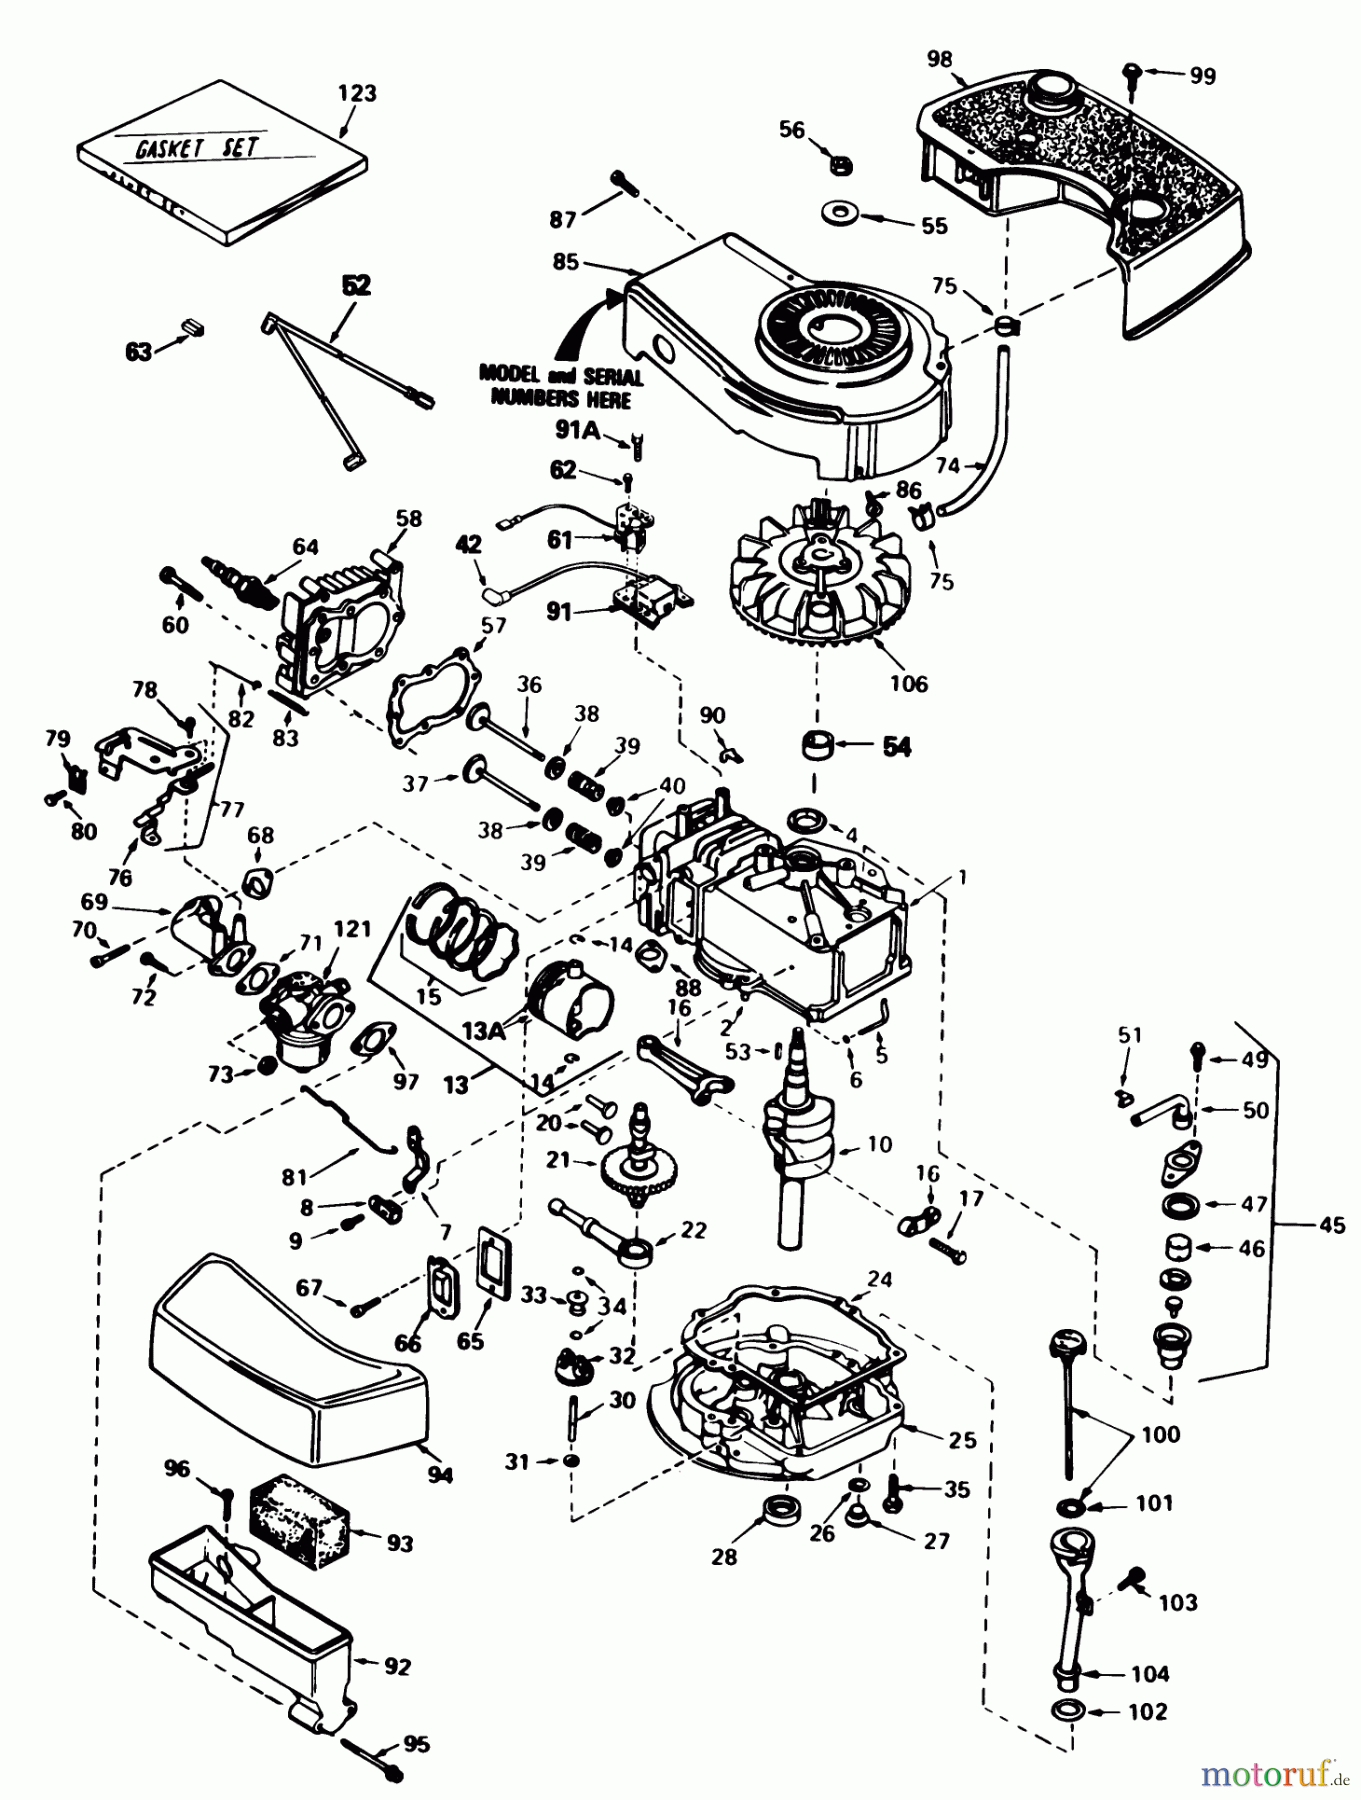  Toro Neu Mowers, Walk-Behind Seite 1 20574 - Toro Lawnmower, 1985 (5000001-5999999) ENGINE TECUMSEH MODEL NO. TNT 100-10084E